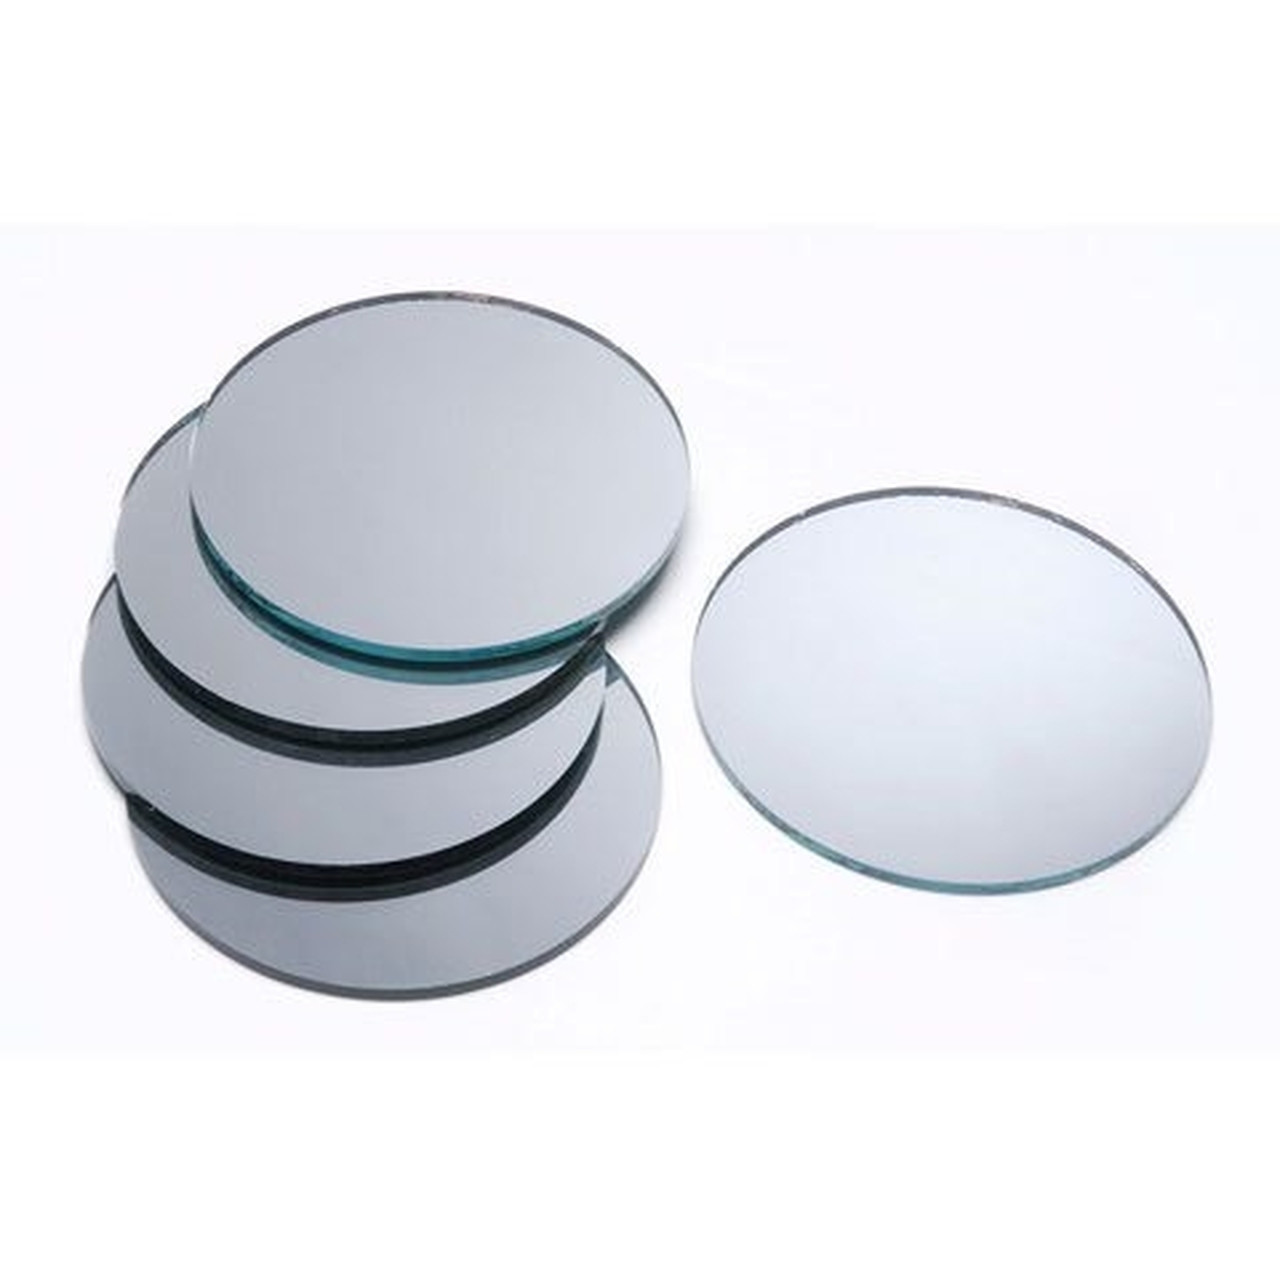 16 Round Centerpiece Mirrors - 12 Pieces 